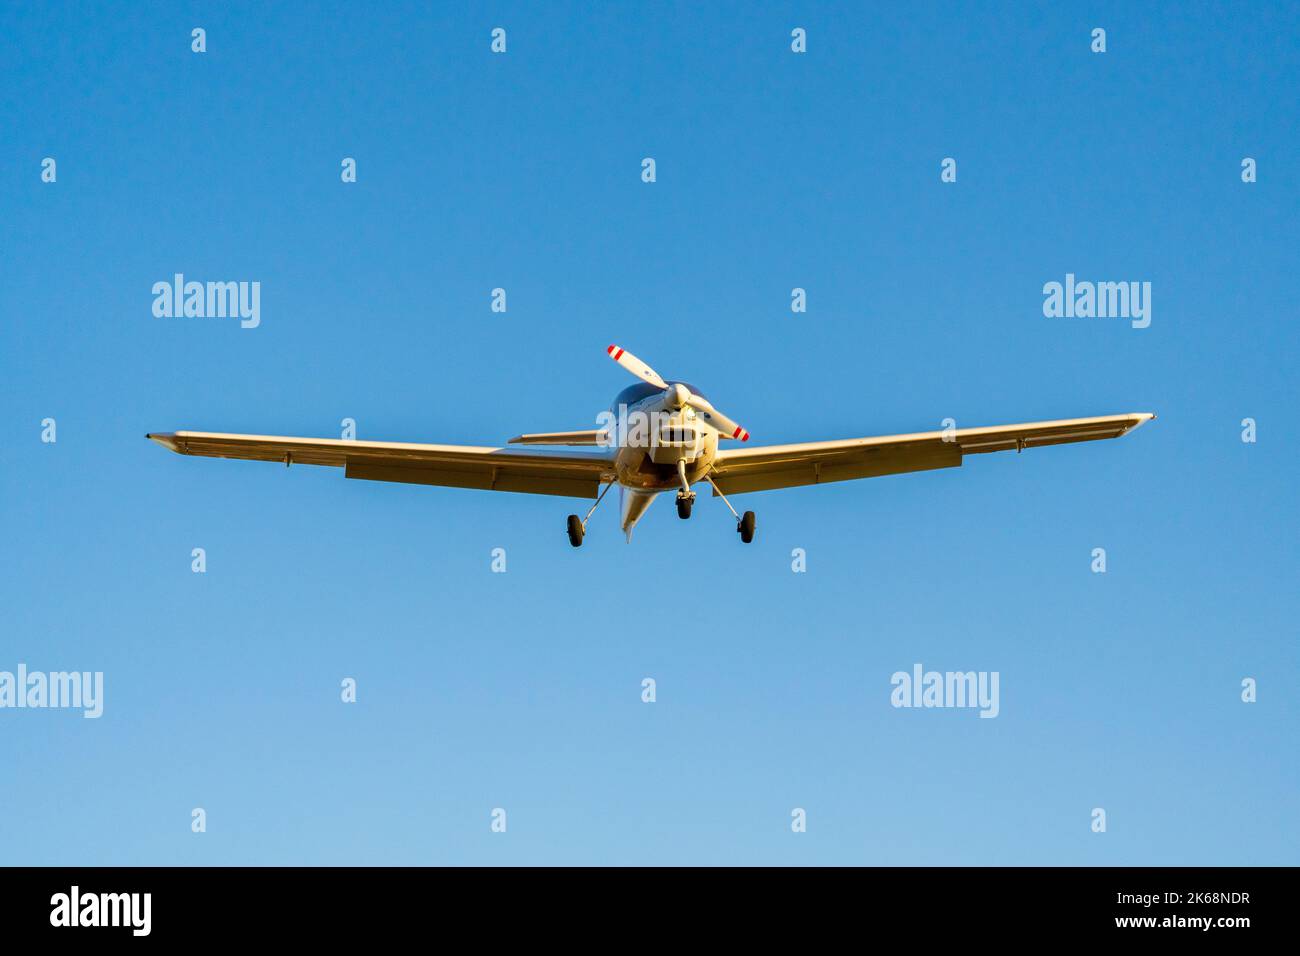 Avion à hélice unique qui atterrit d'une vue de face dans un ciel bleu Banque D'Images